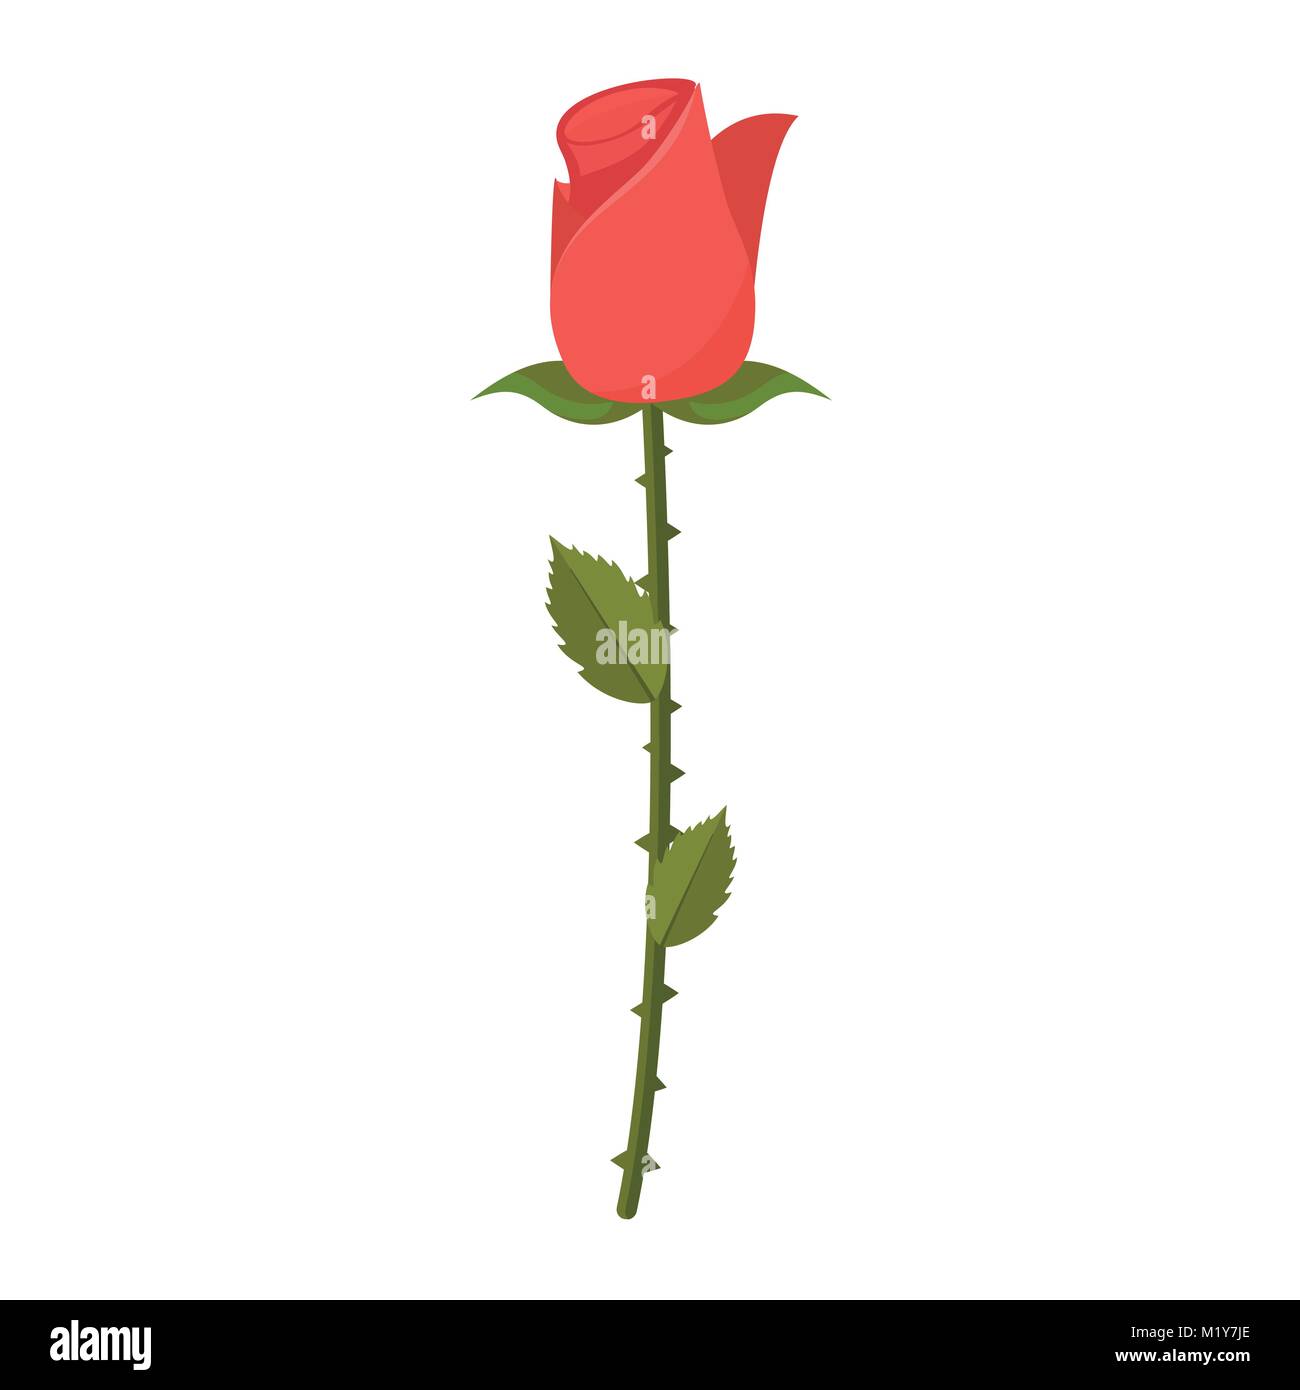 Einfach isoliert Rose Blume Illustration Vektor Grafik Design  Stock-Vektorgrafik - Alamy